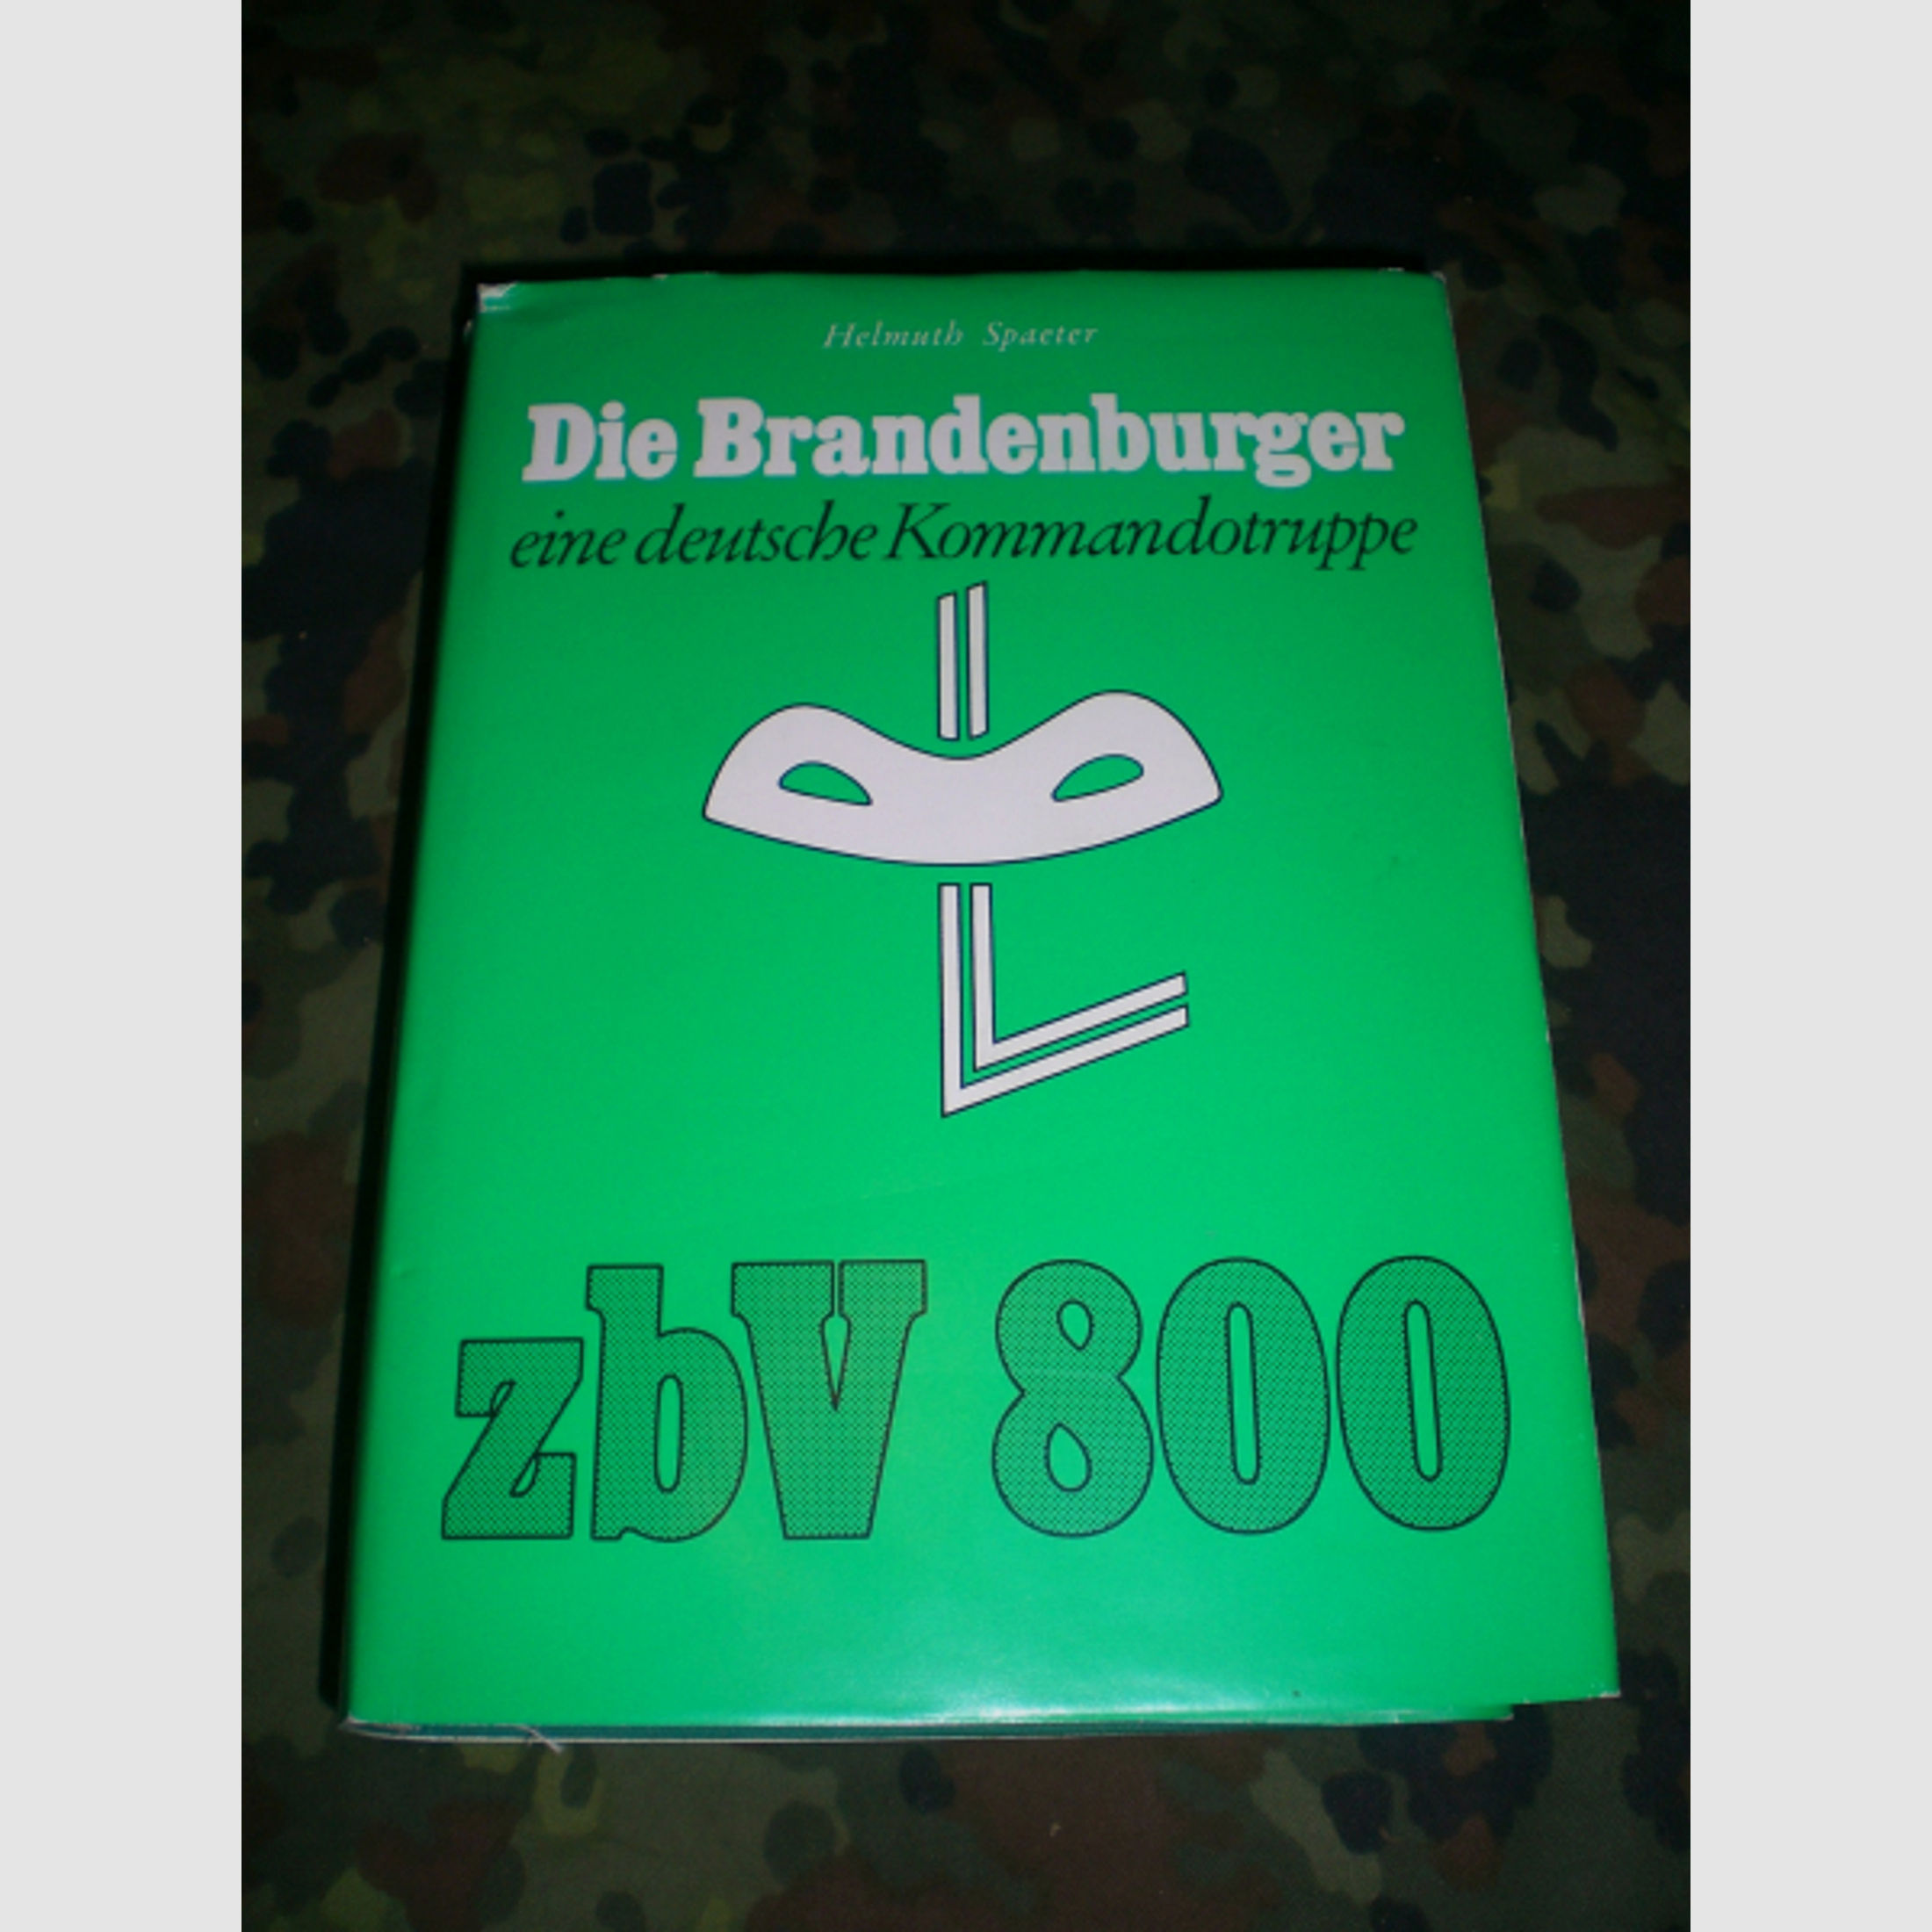 Antiquarisches Buch: Die Brandenburger ZBV800